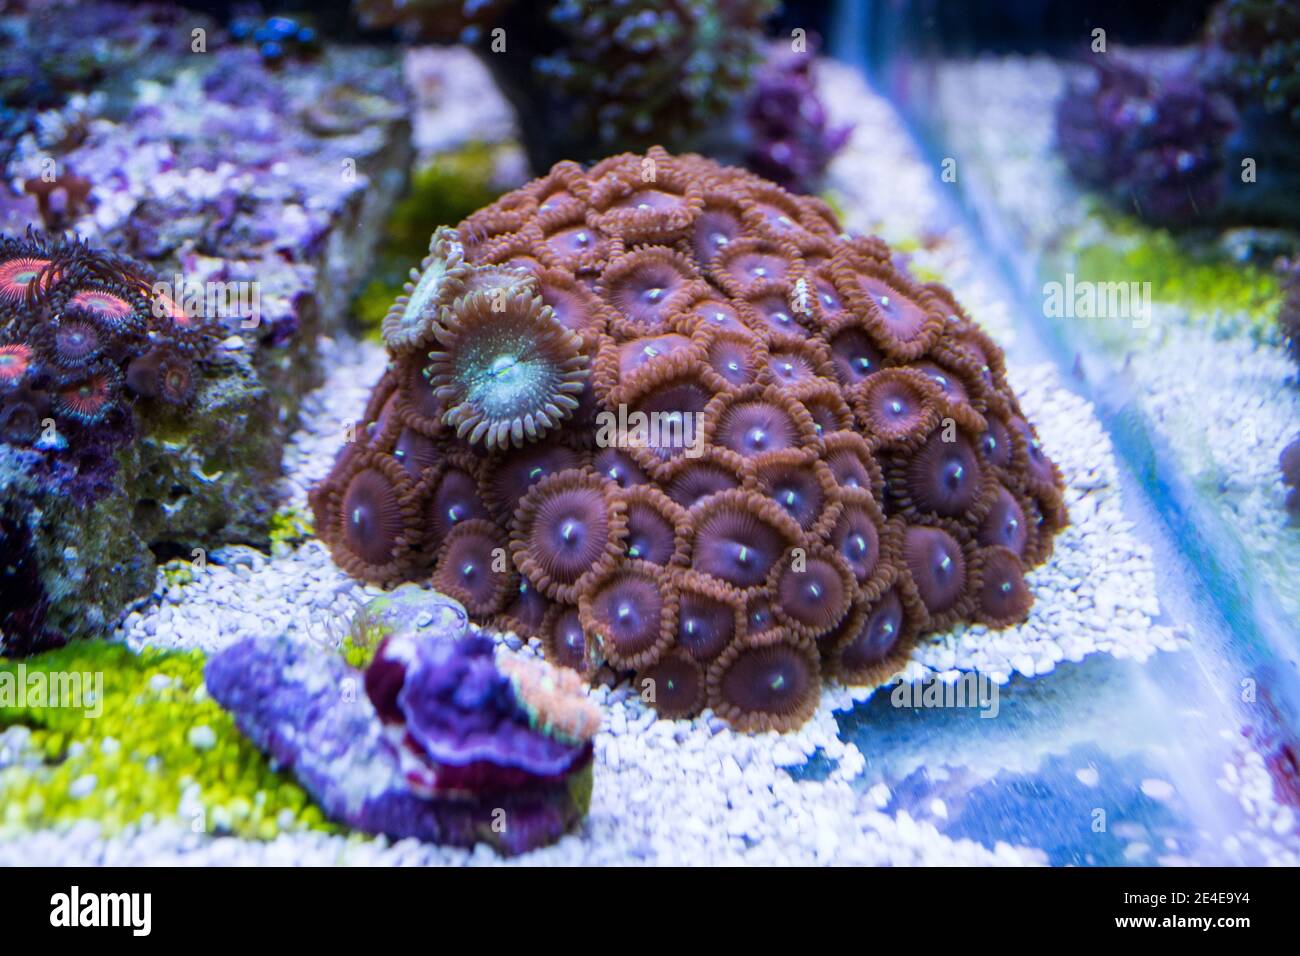 Colonie de polypes de Zoanthus dans un aquarium marin d'eau salée Banque D'Images